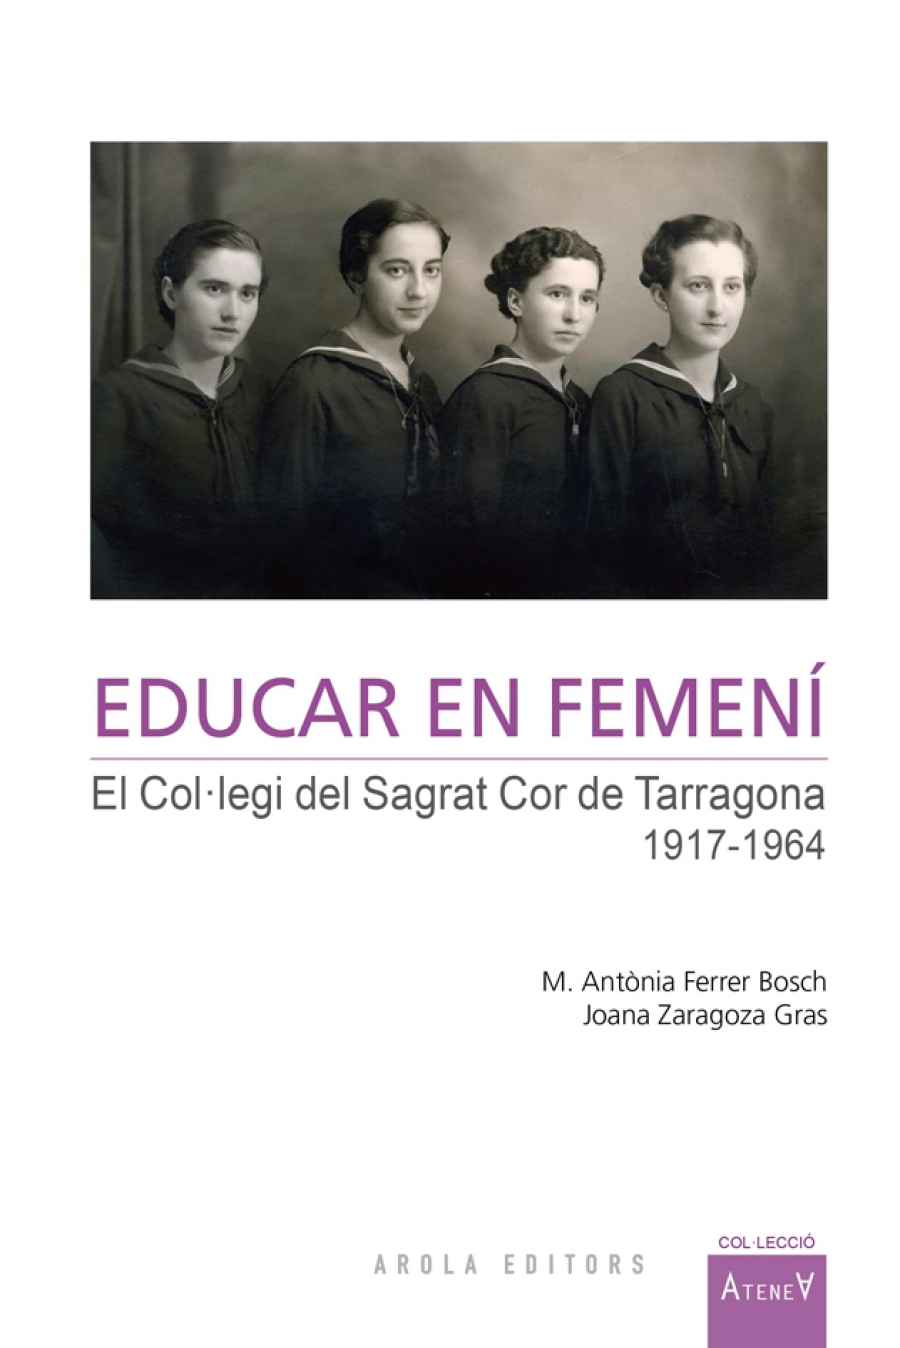 Imagen de portada del libro Educar en femení